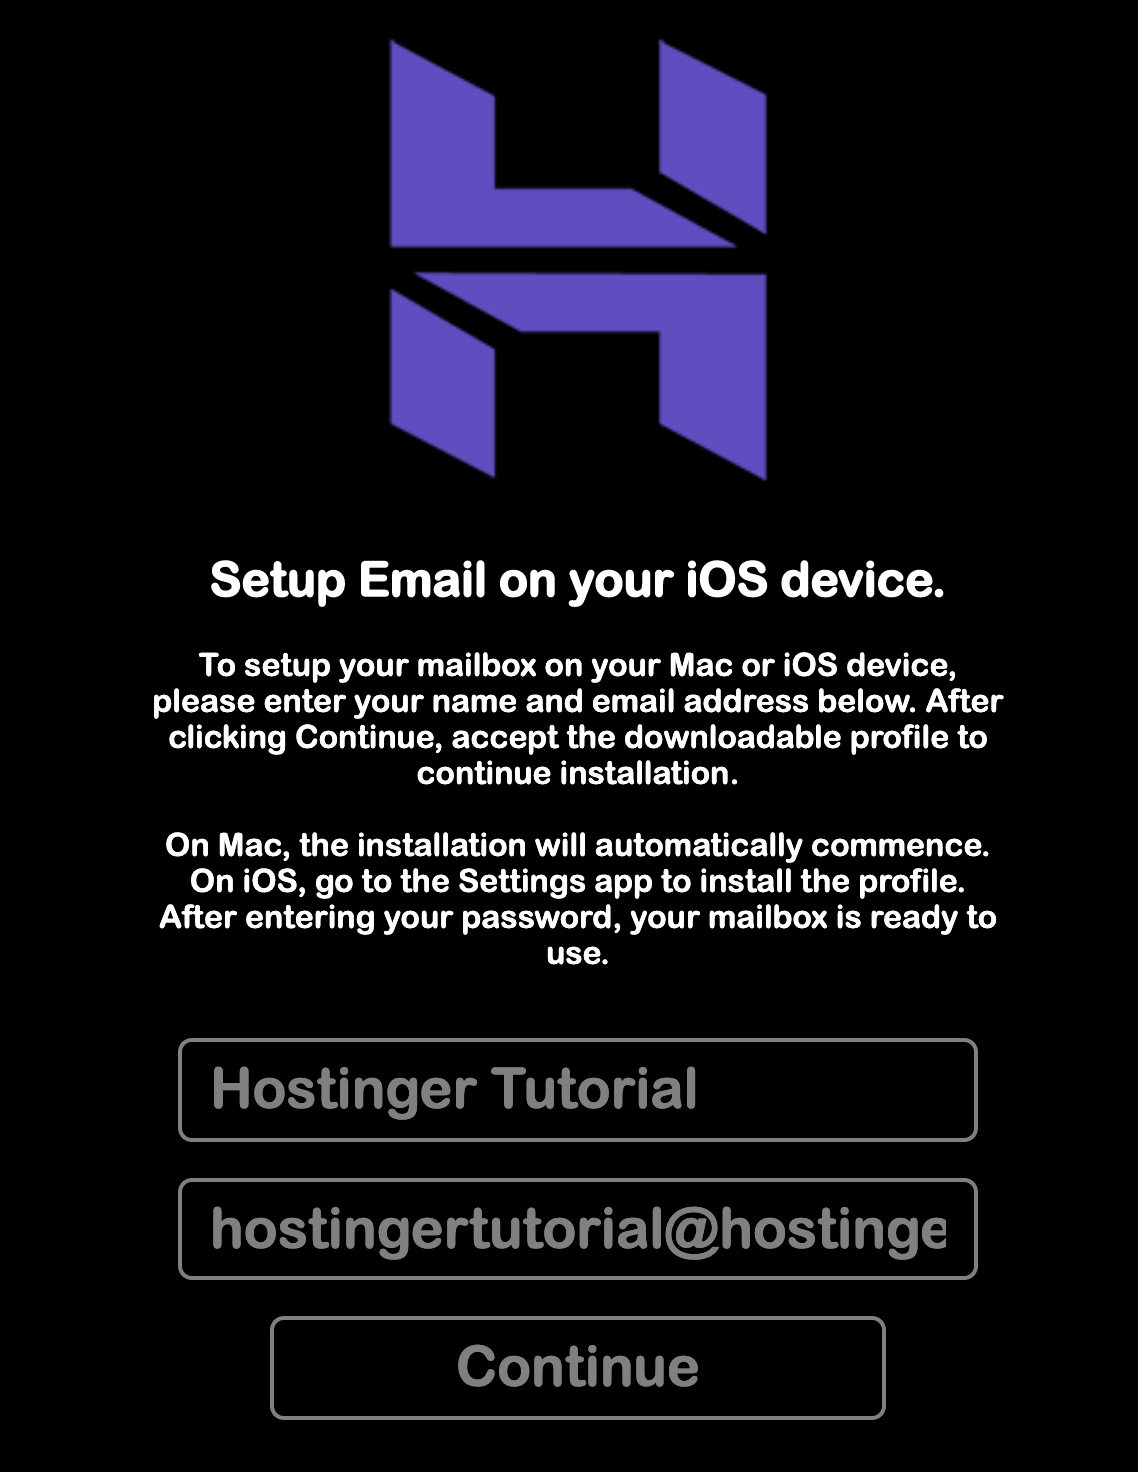 configurador automático de email da hostinger